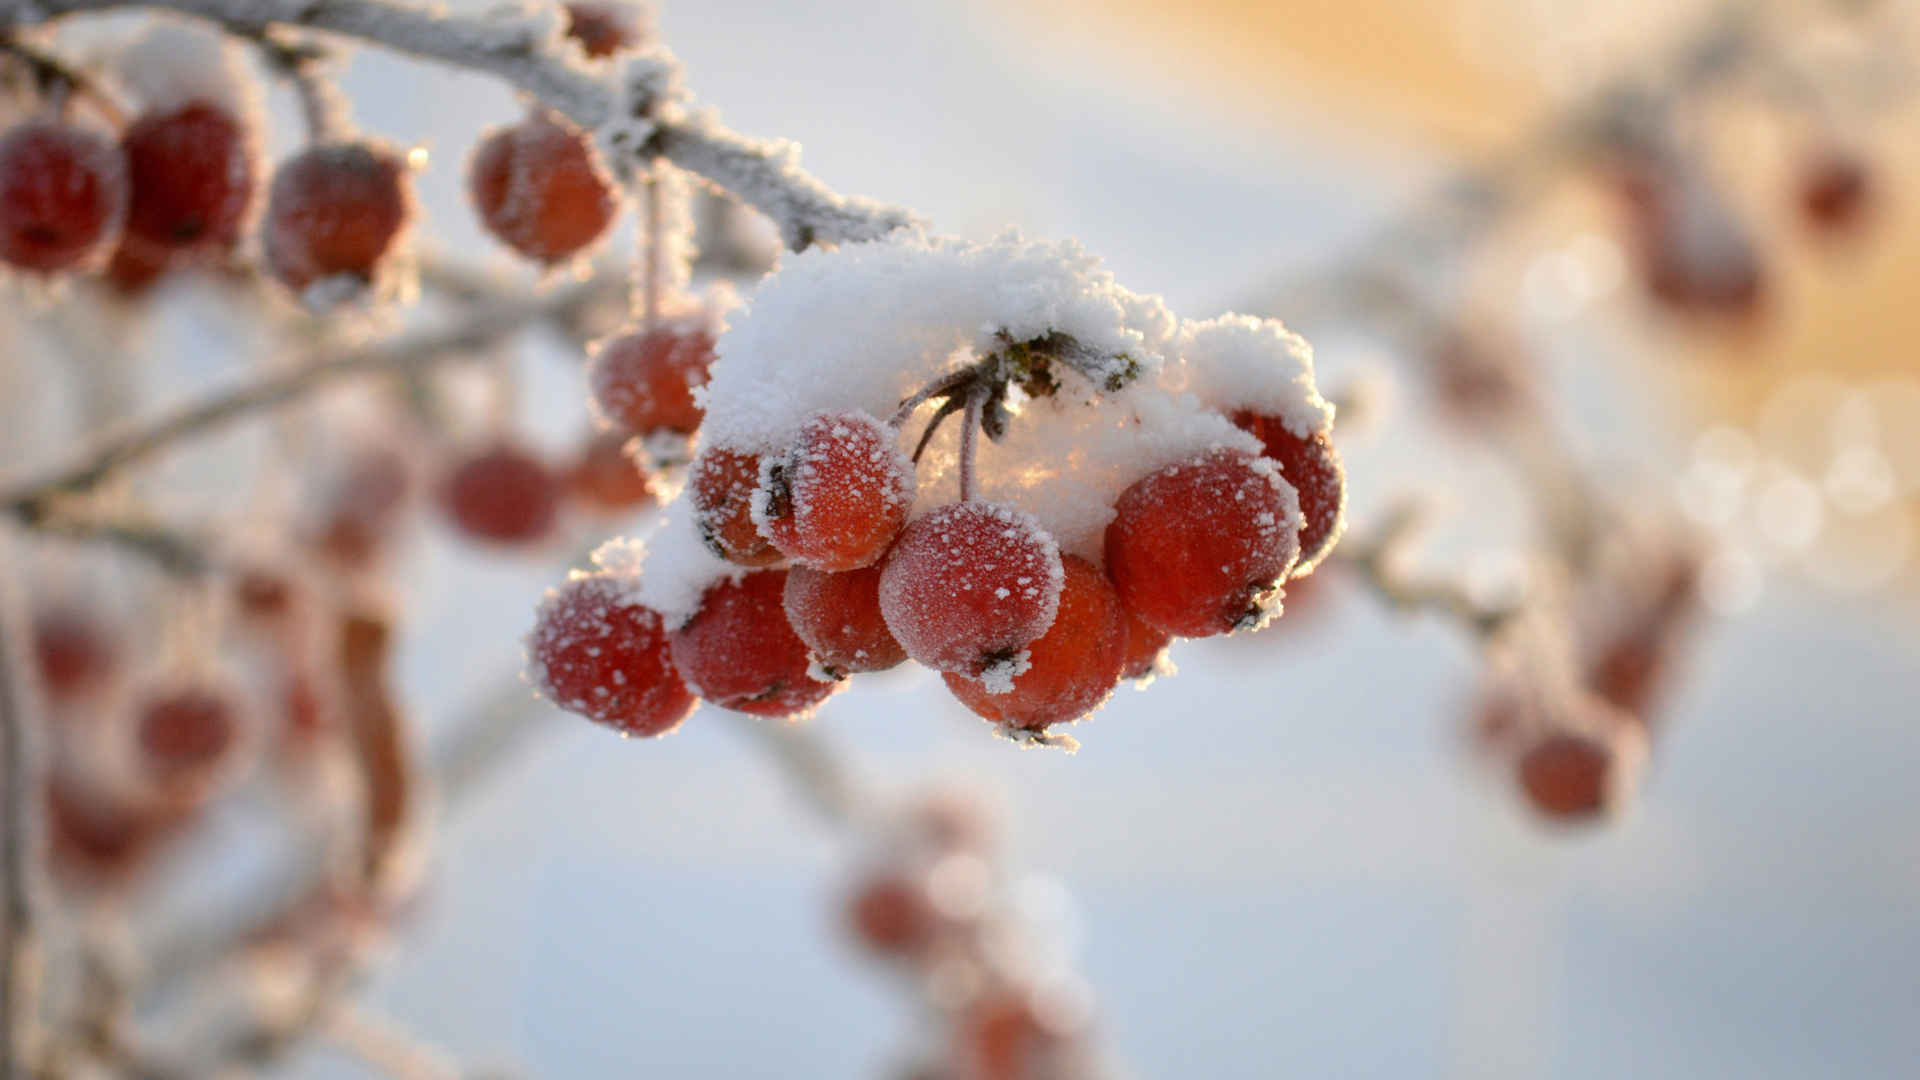 冬天 红色果实 冬季 4k壁纸图片